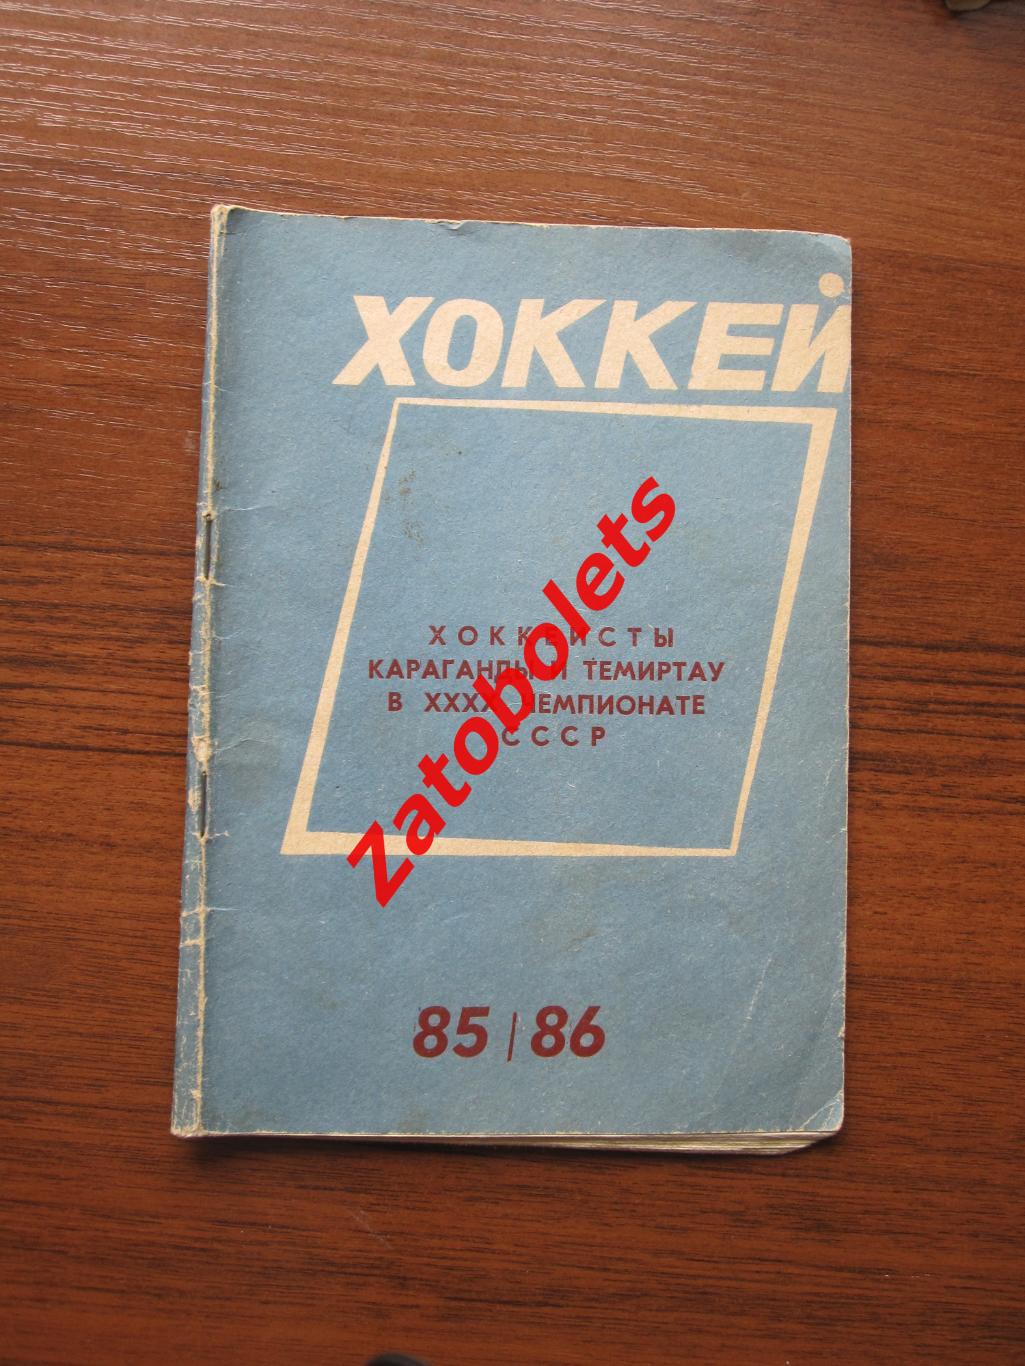 Календарь-справочник Хоккей Караганда\ Темиртау 1985-1986